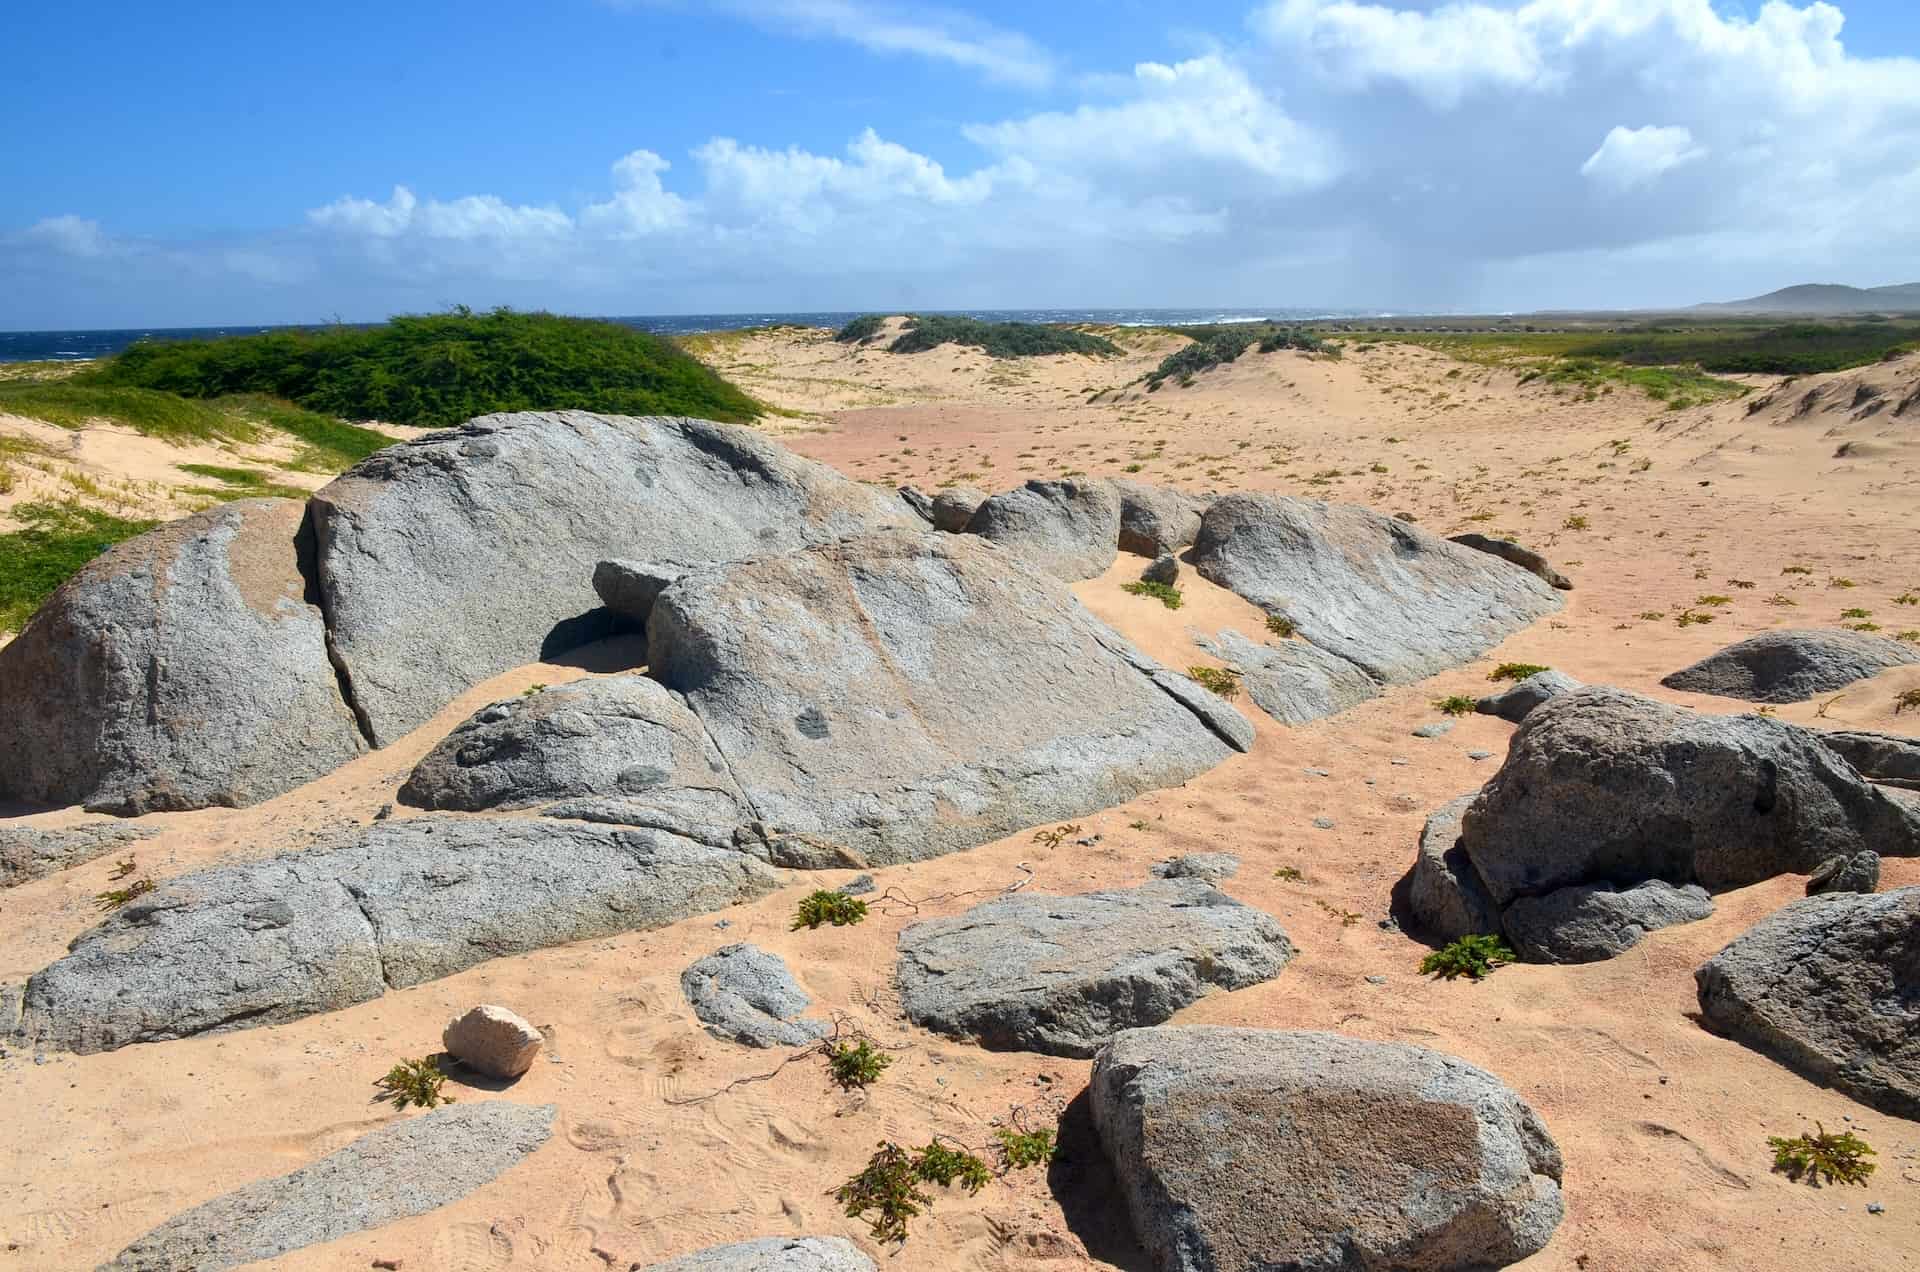 Rocks at the Sasarawichi Dunes